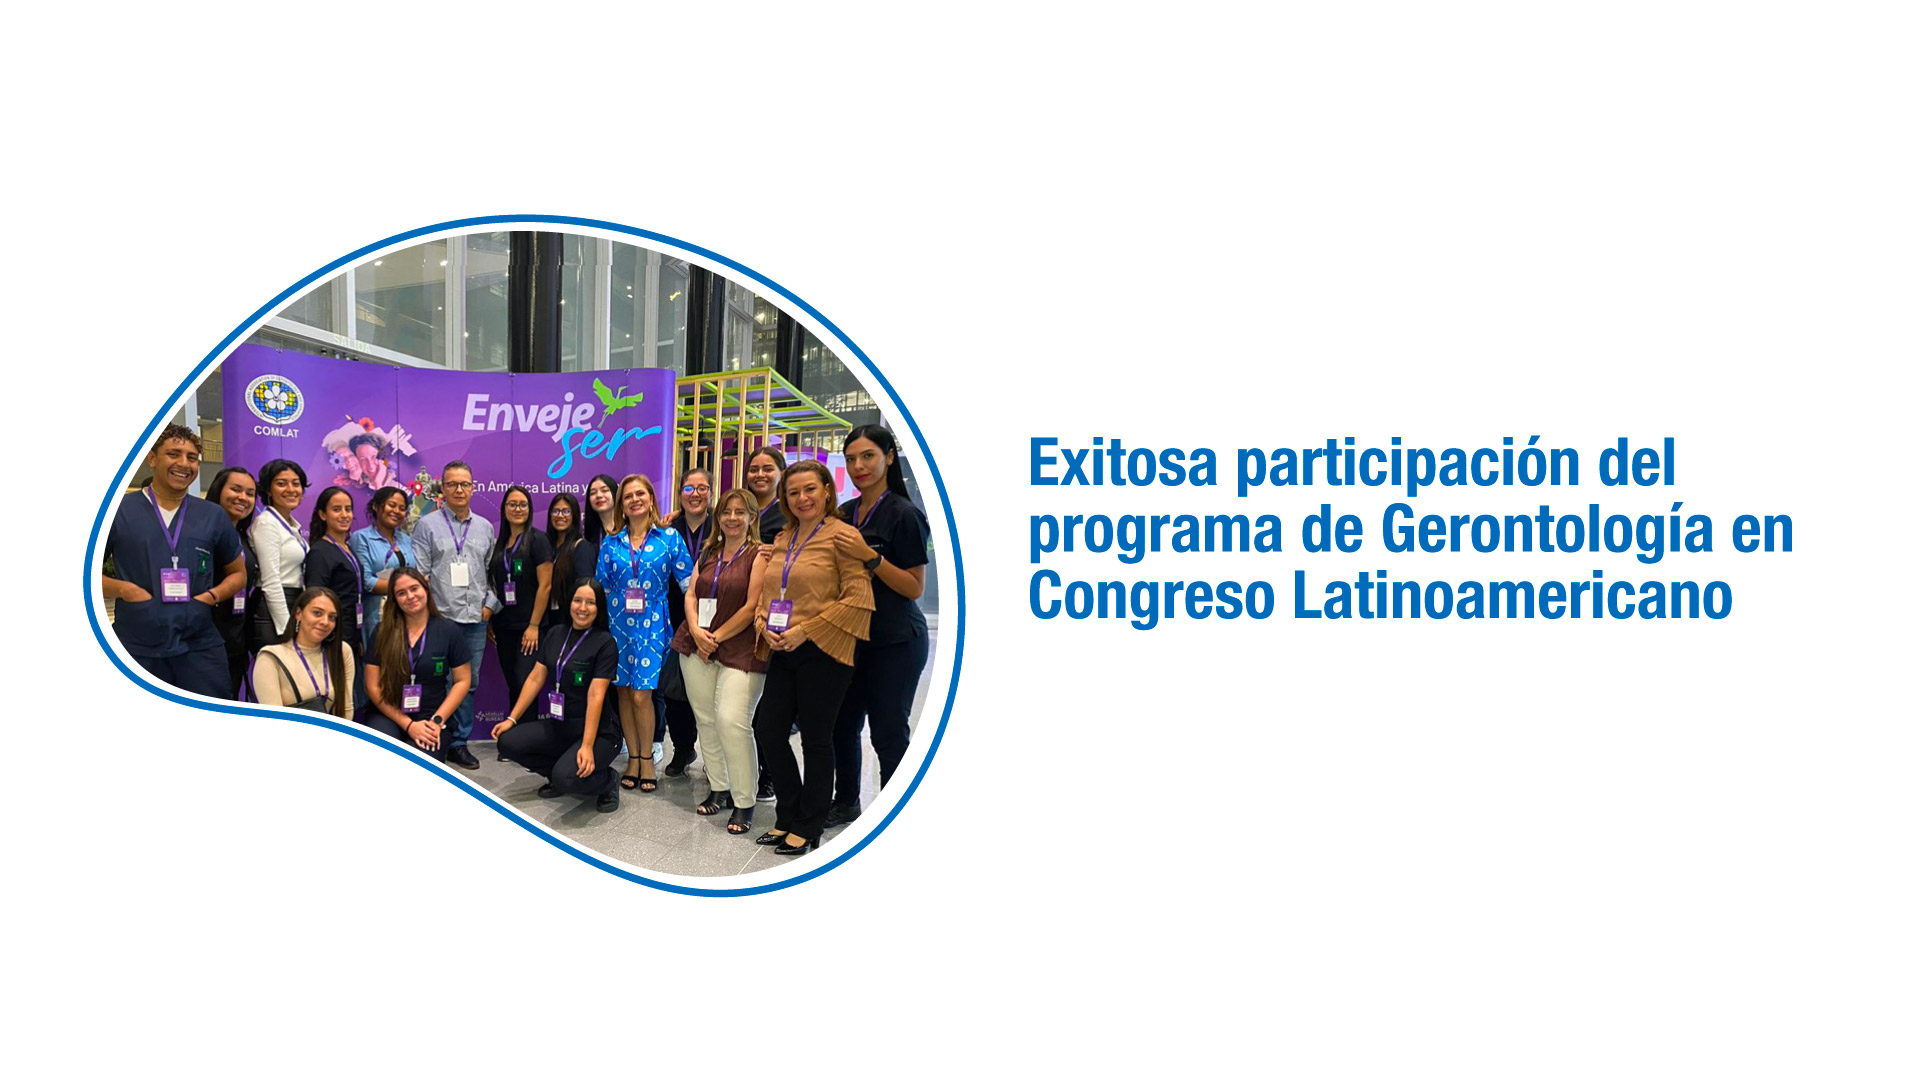 Exitosa participación del programa de Gerontología en Congreso Latinoamericano